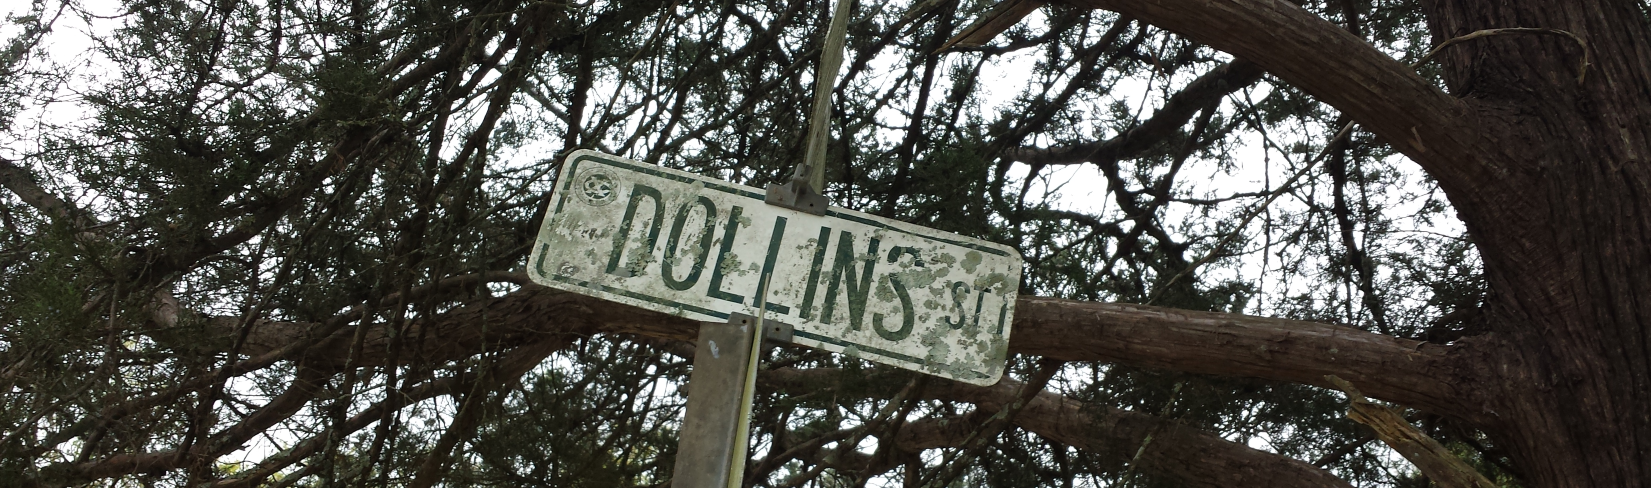 dollins_st2